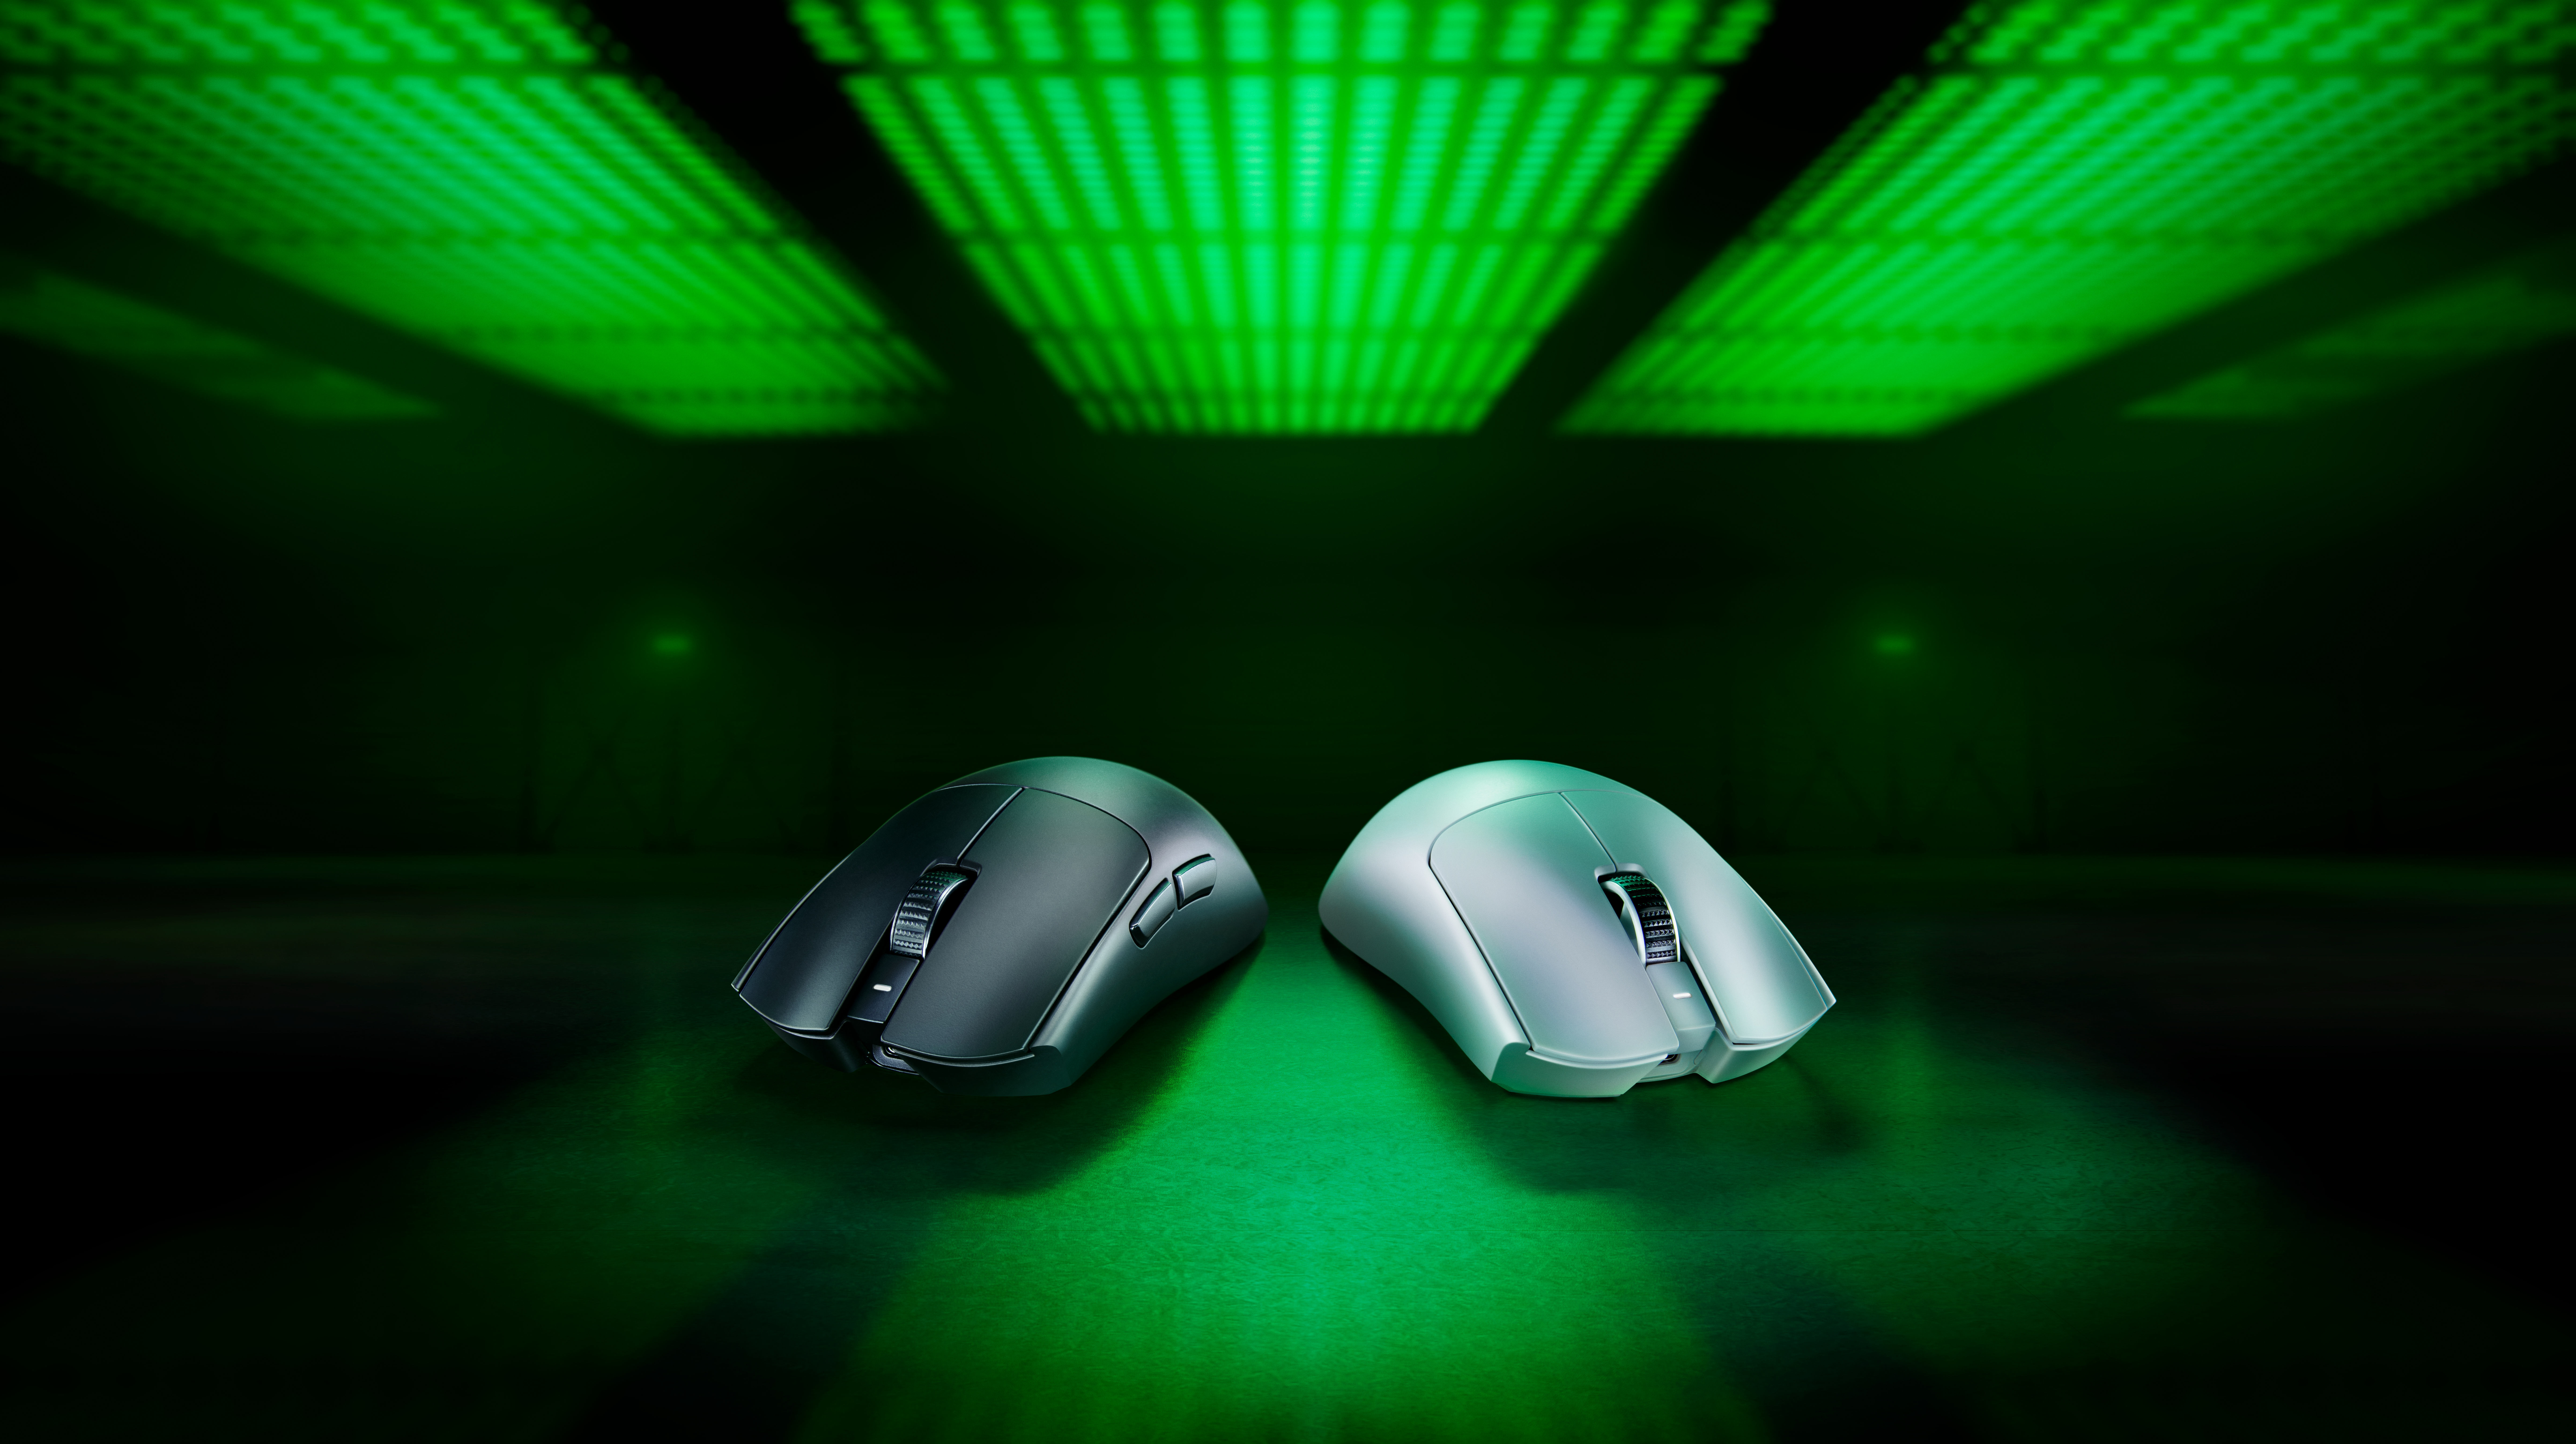 プロeスポーツプレイヤーとの密接な協力のもと設計された
王者のためのマウス「Razer Viper V3 Pro」を
4月24日(水)より予約開始